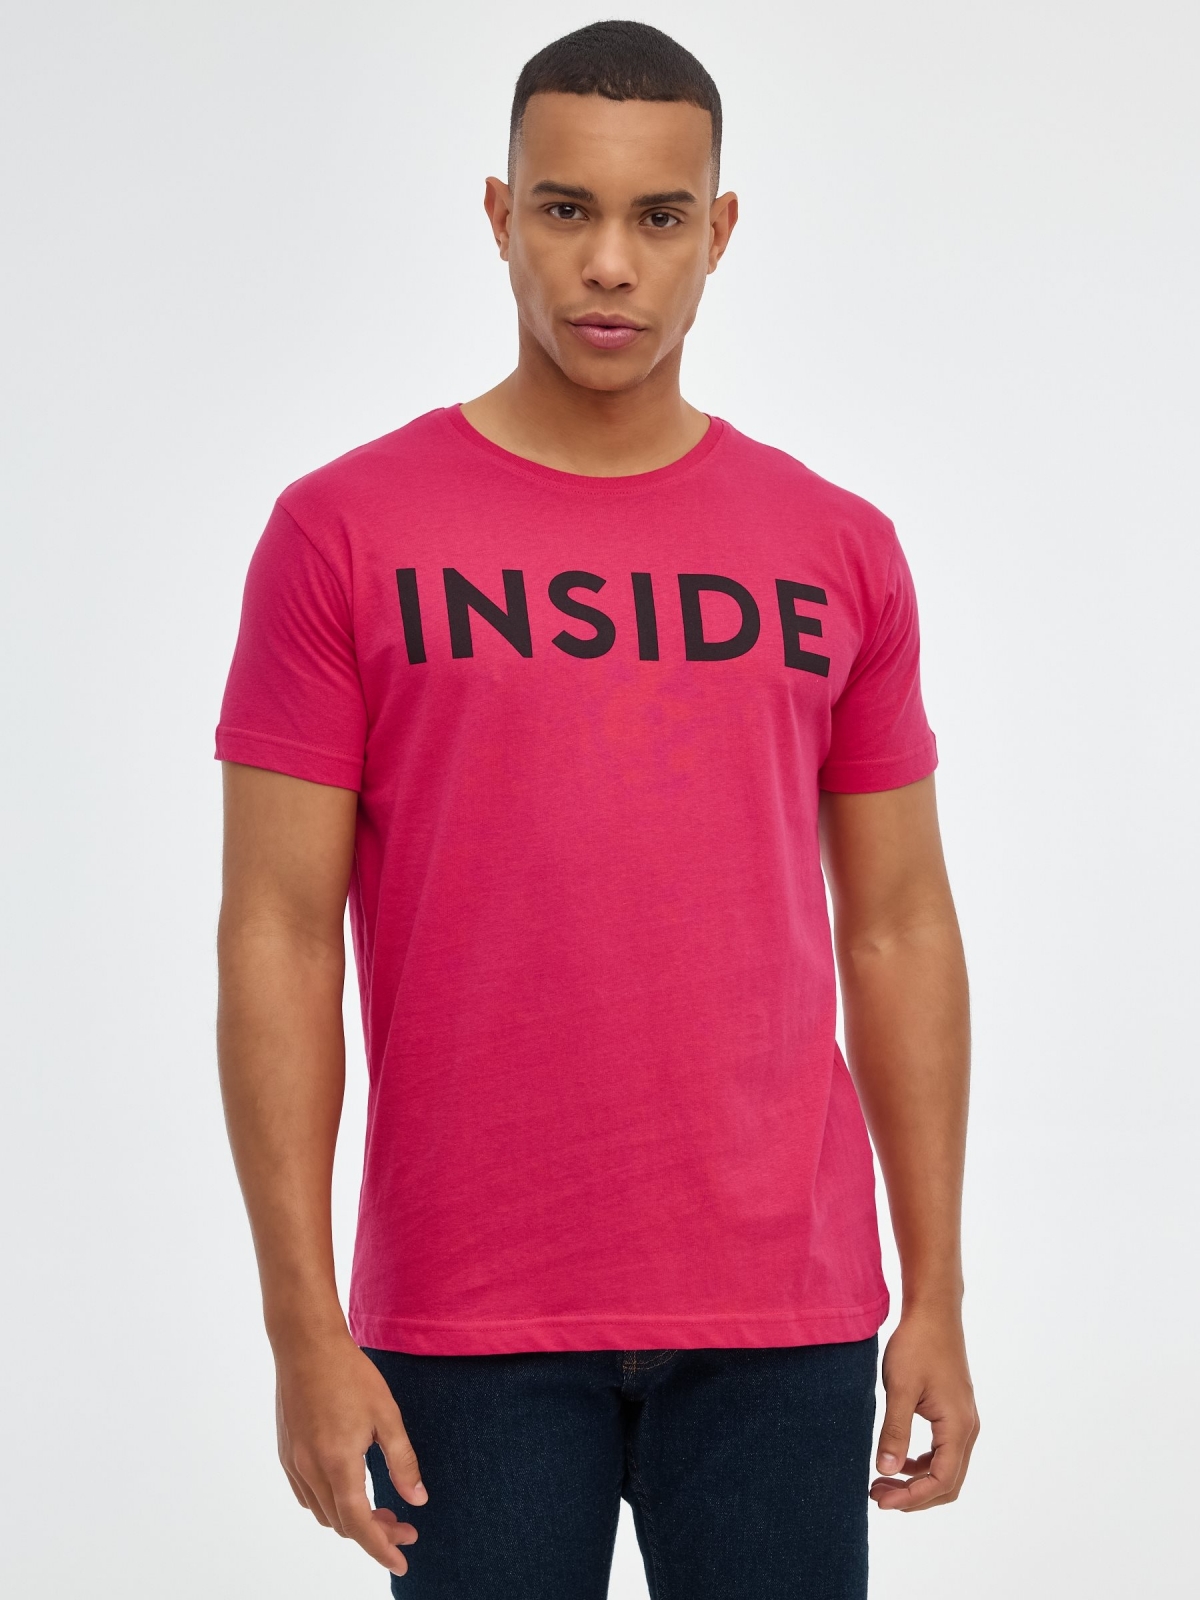 Camiseta básica "INSIDE" rojo vista media frontal